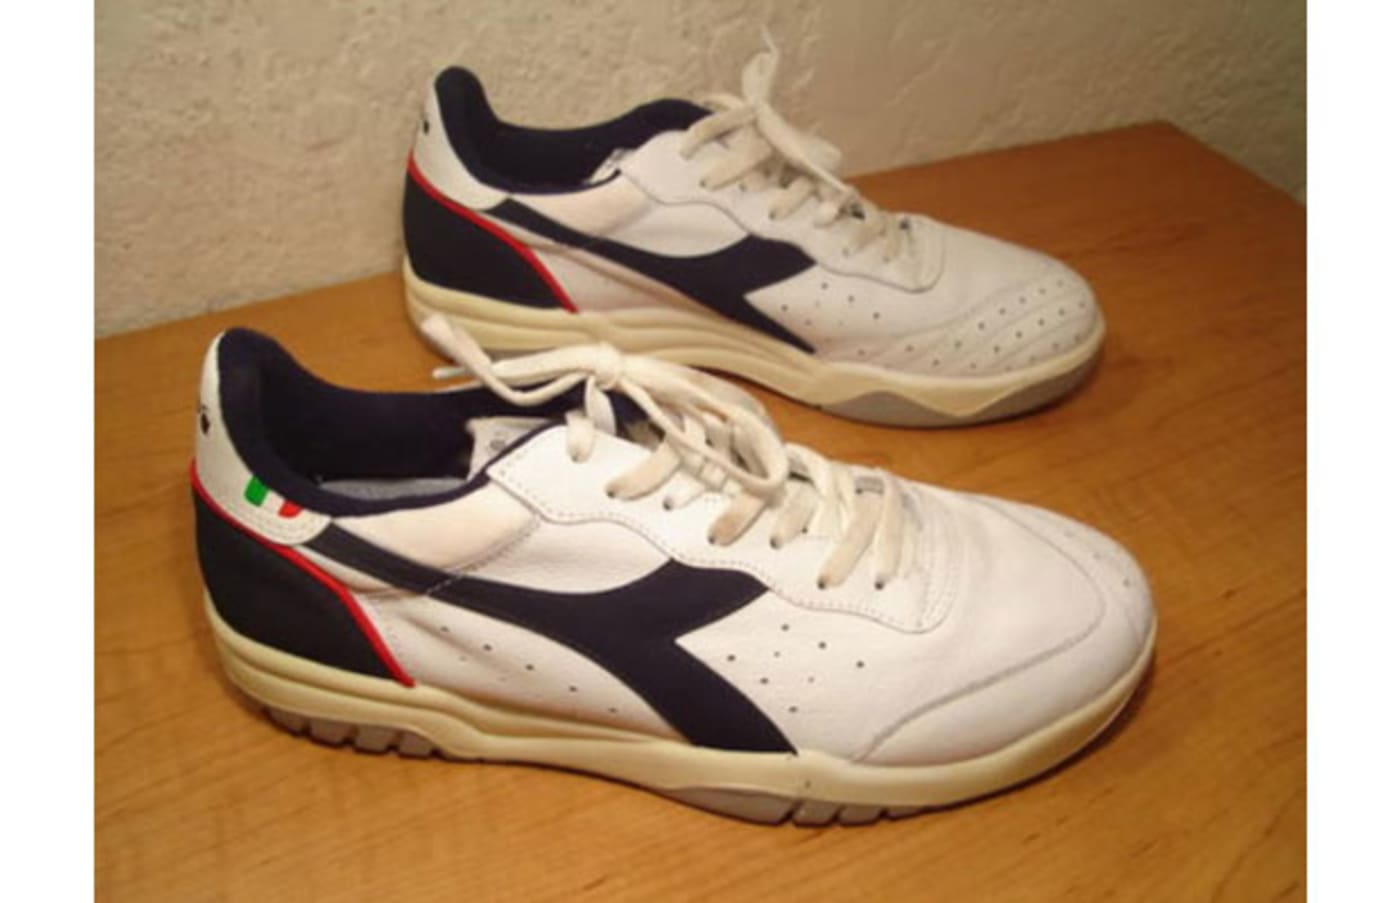 1980s tennis shoes